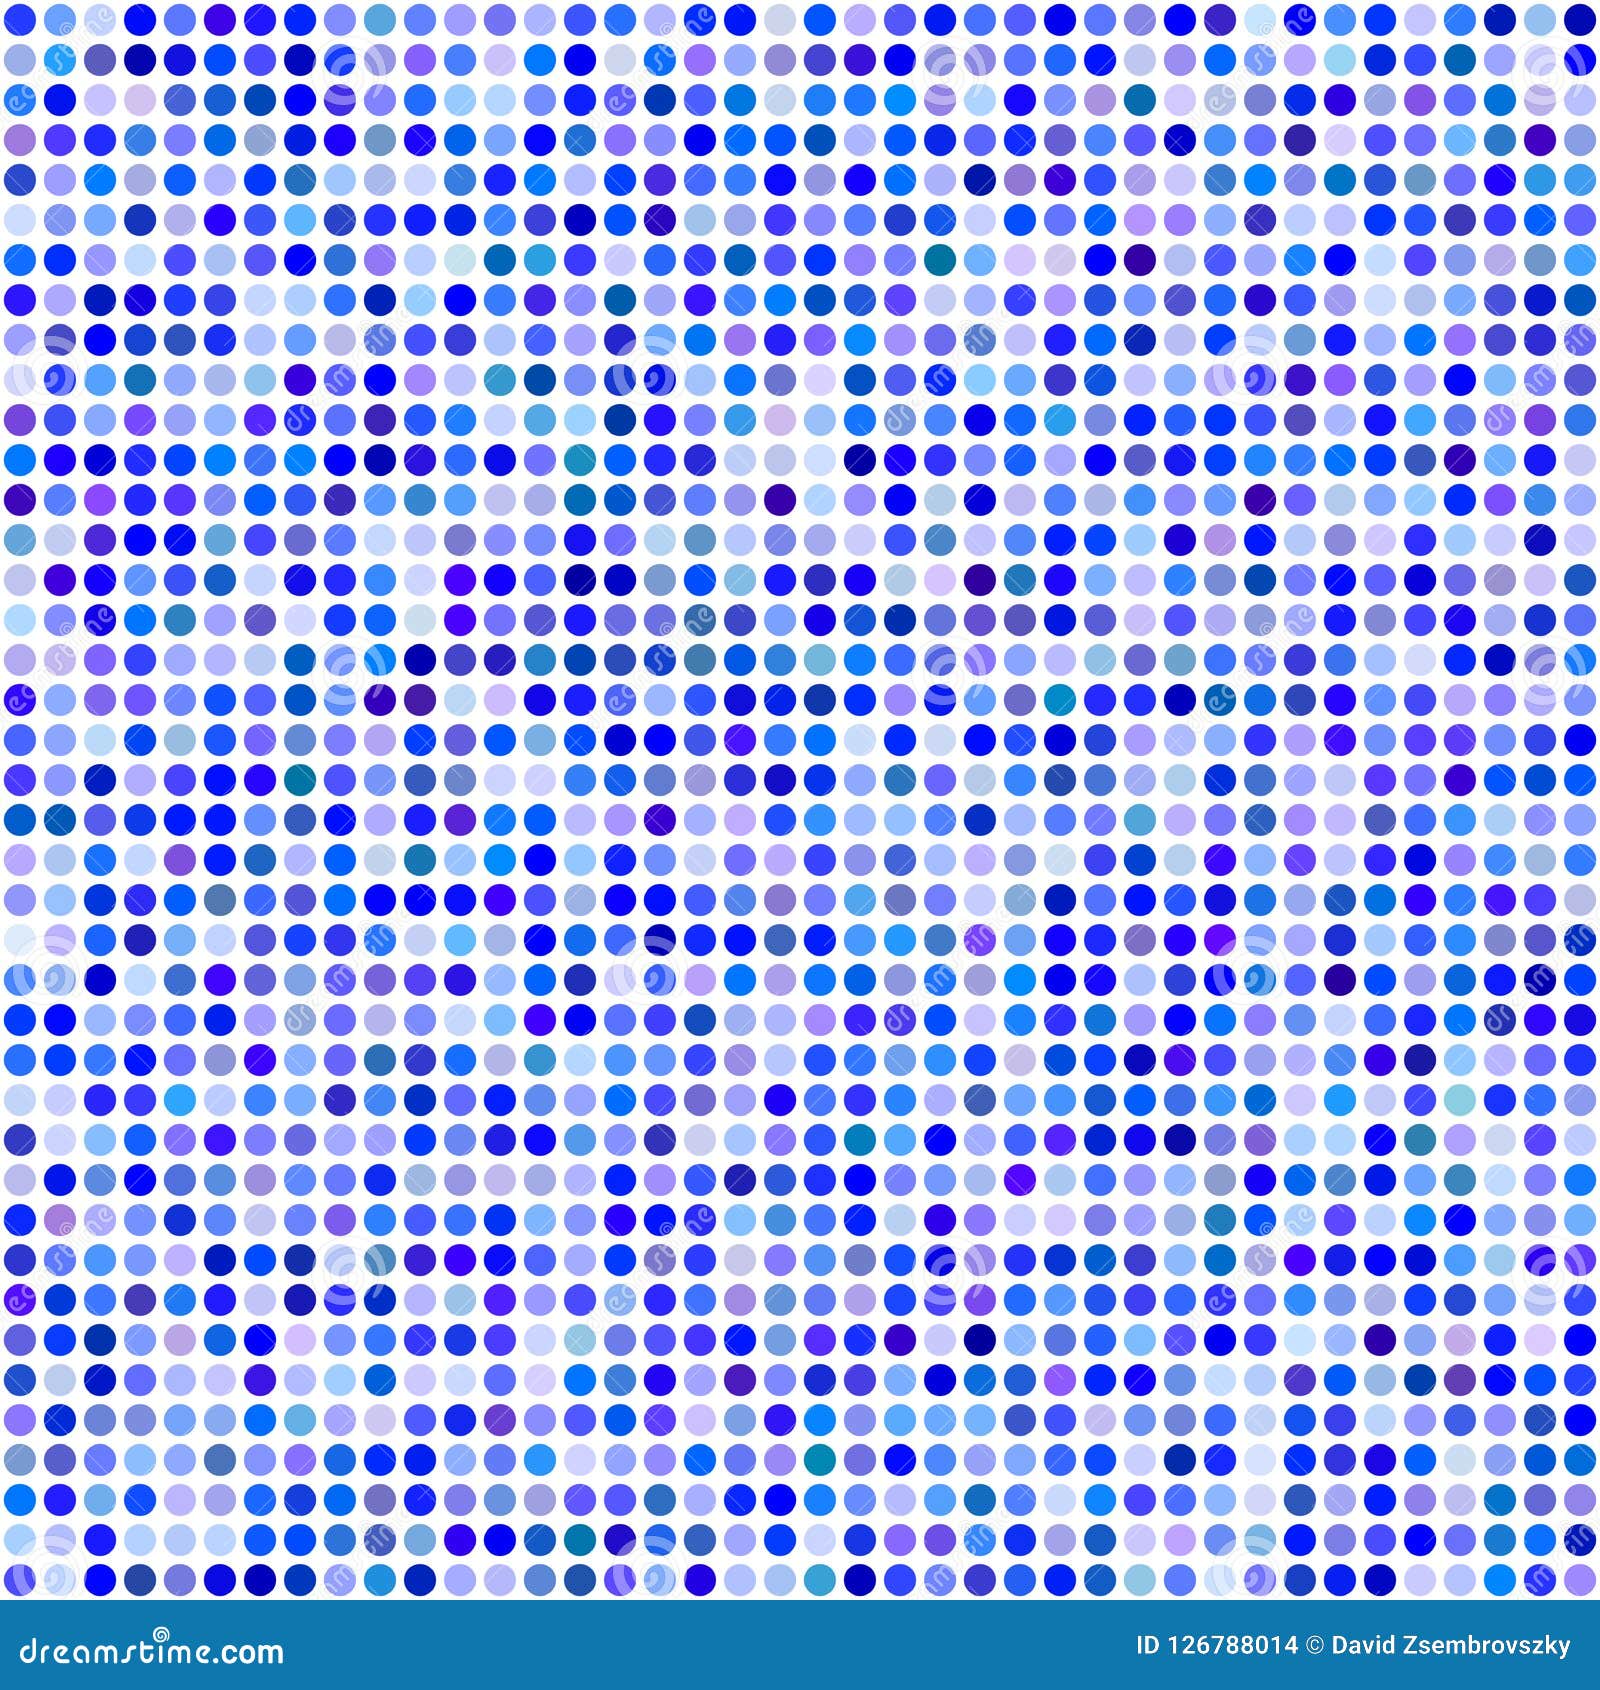 Circle Pixel